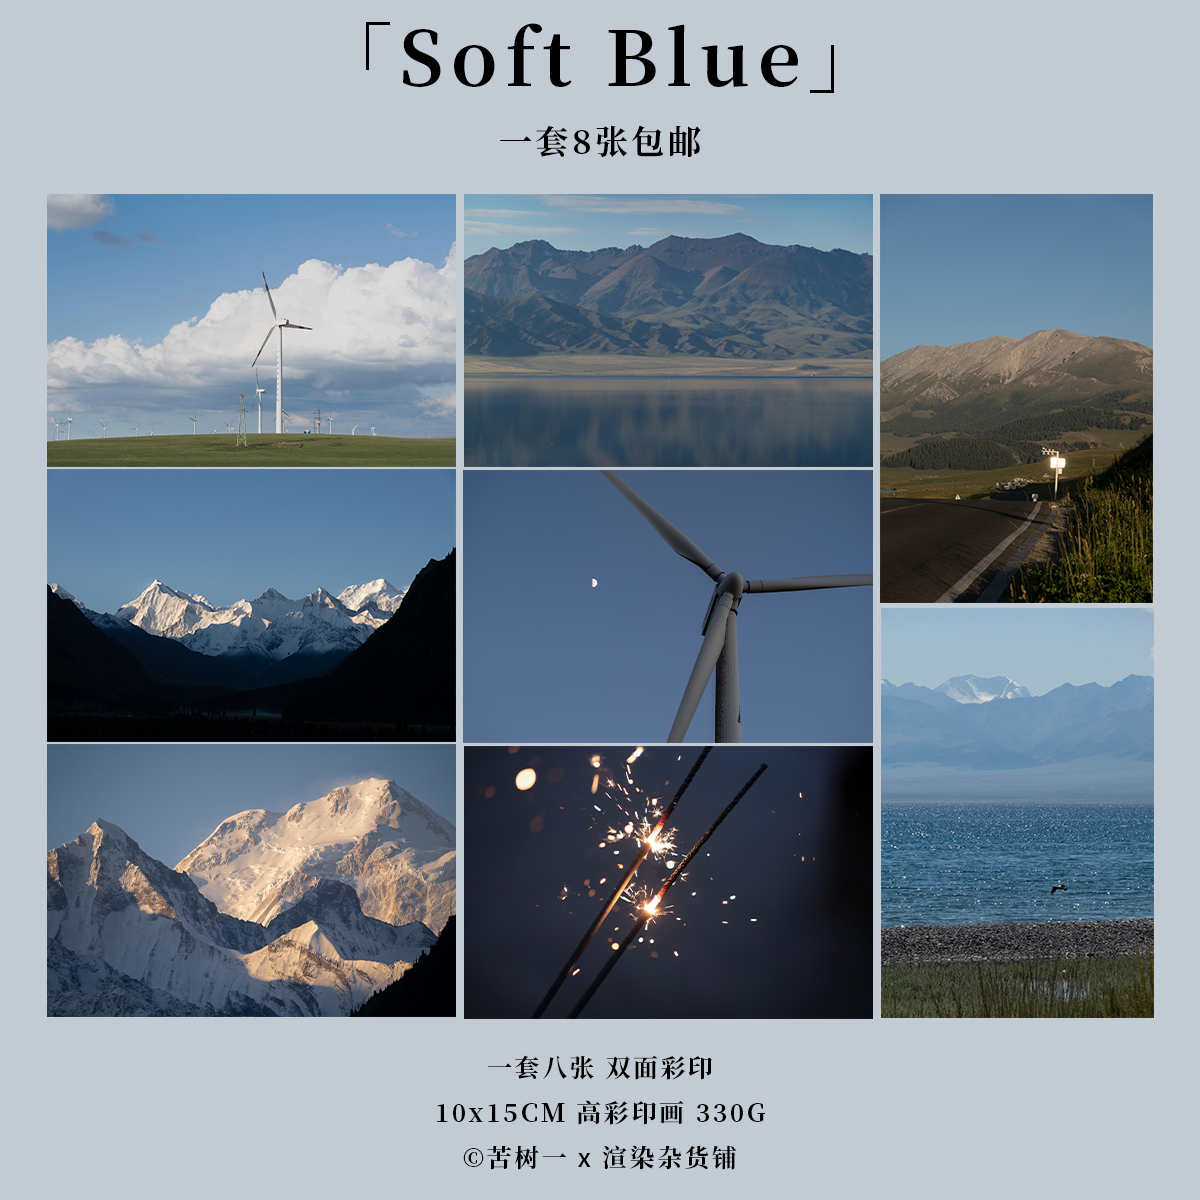 明信片「Soft Blue」苦树一原创摄影 新疆雪山赛里木湖草原阿勒泰